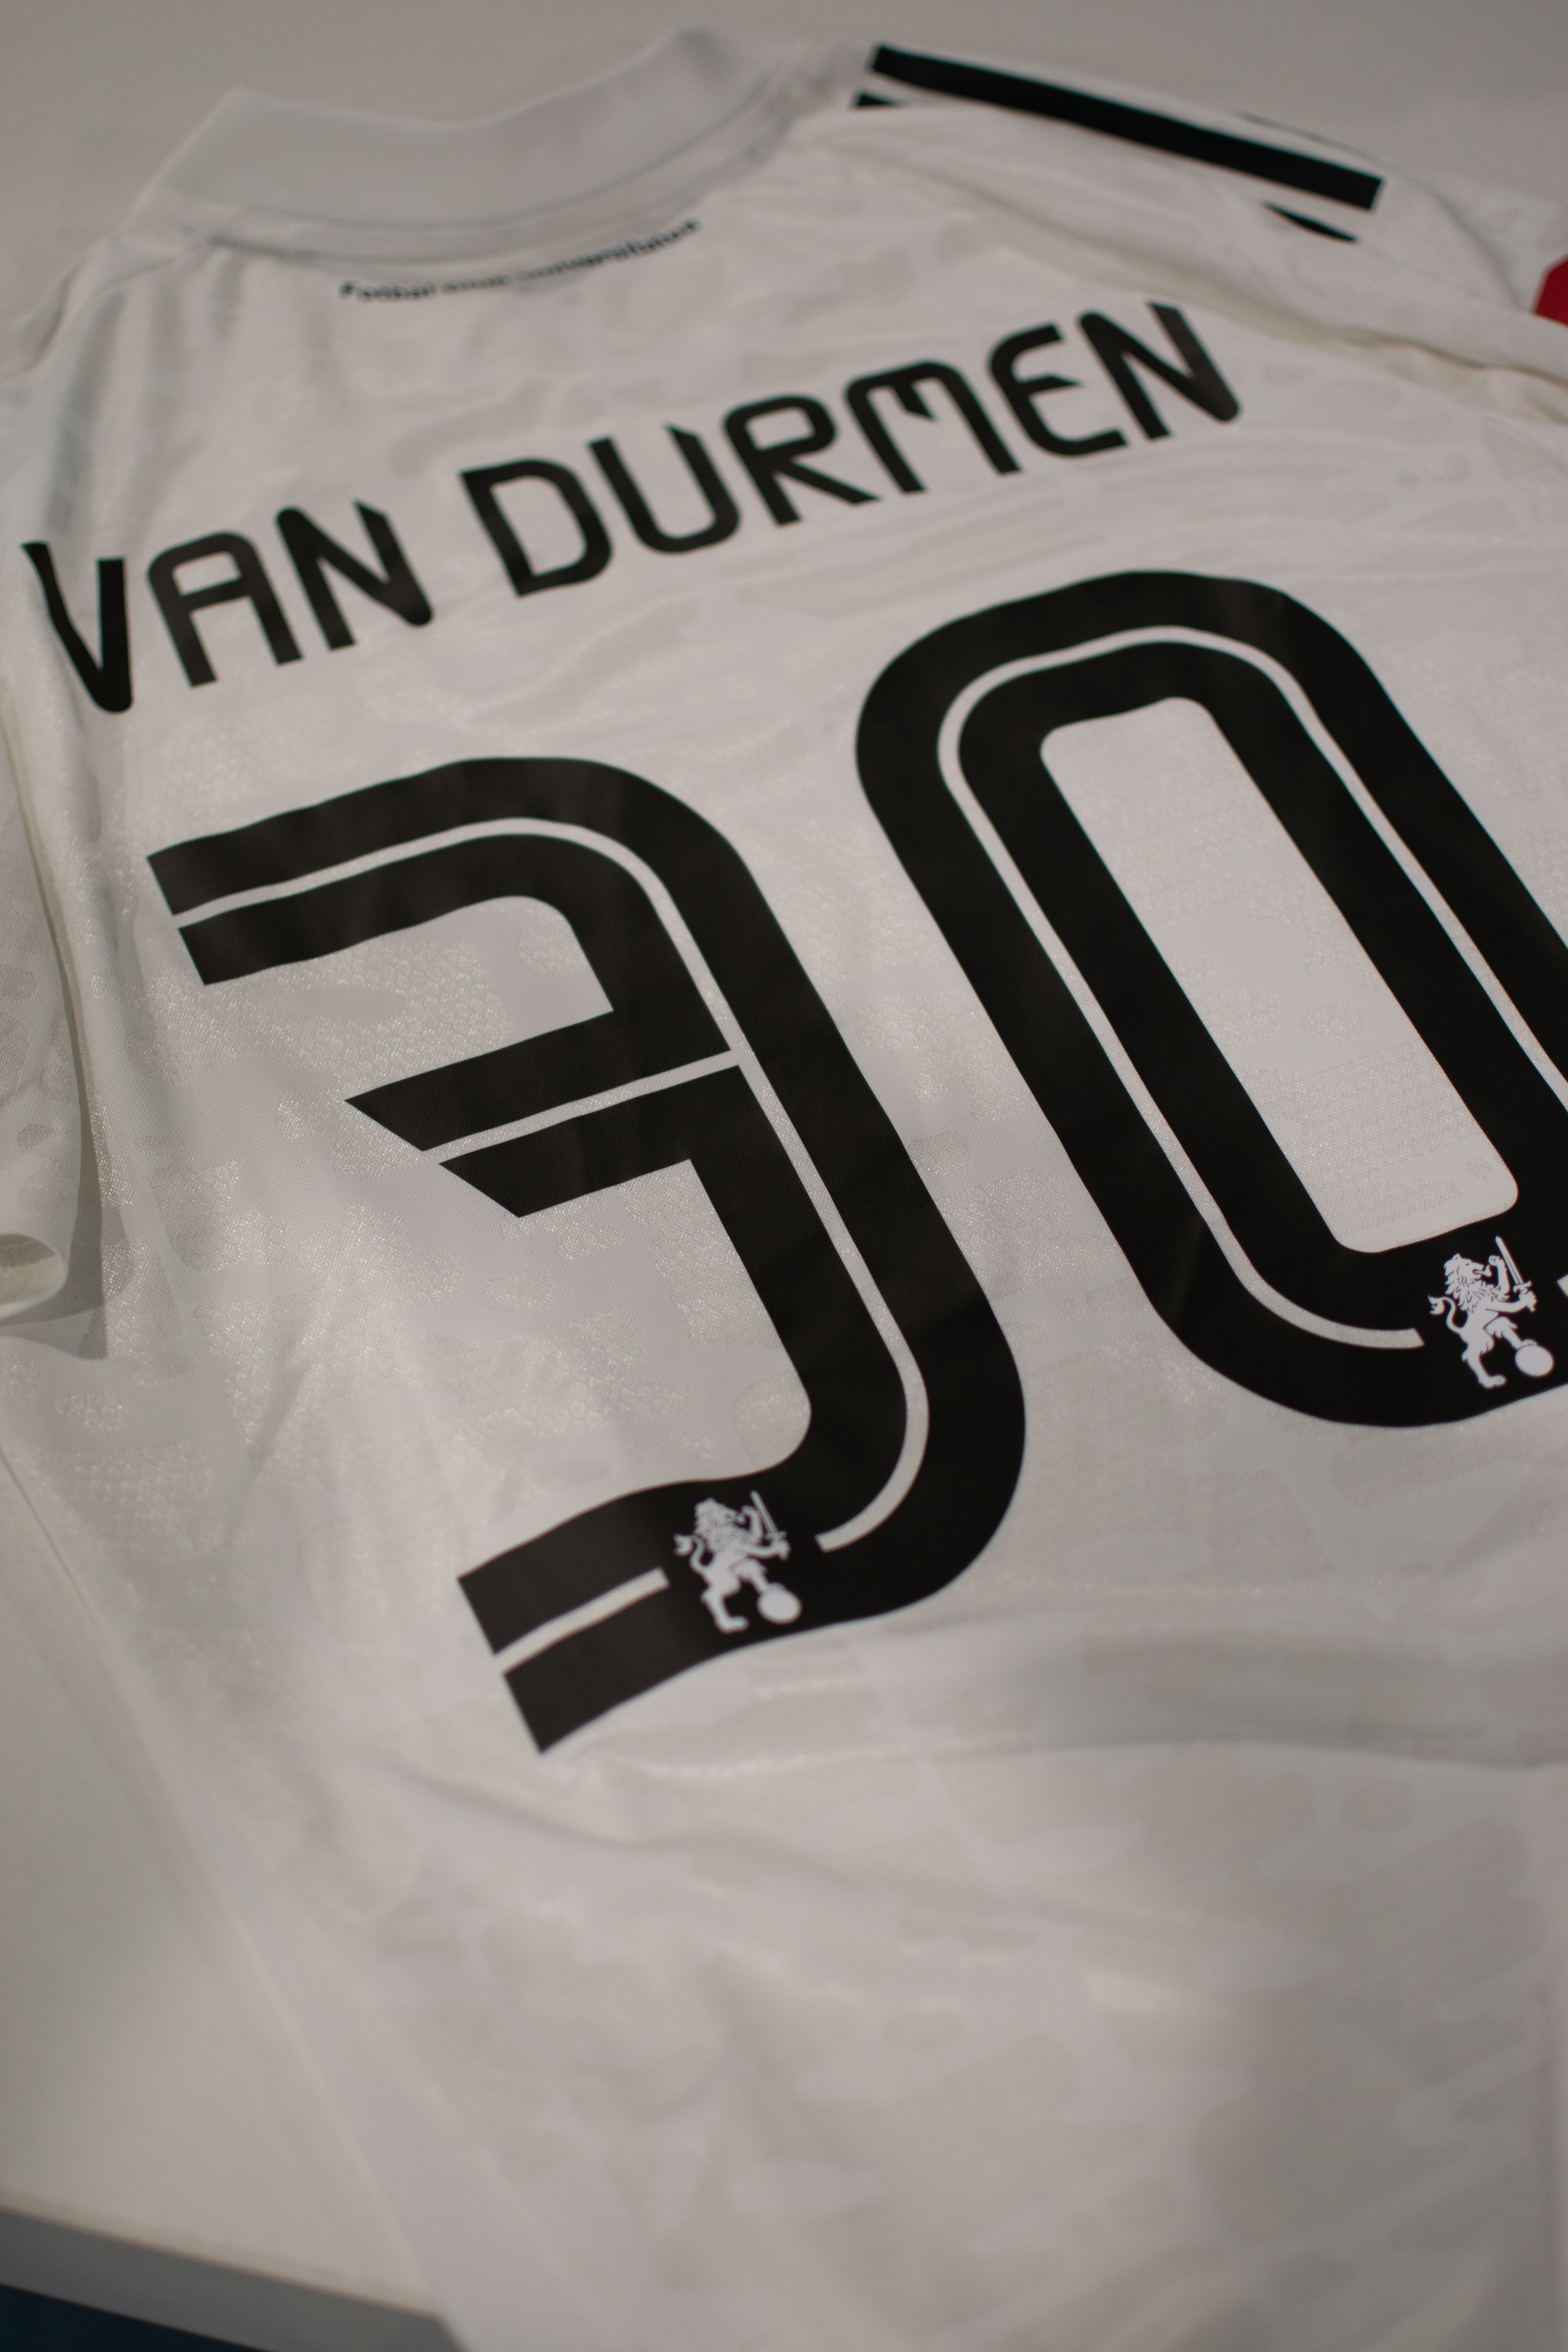 Tricou oficial de joc sezon 2021-2022 - Van Durmen